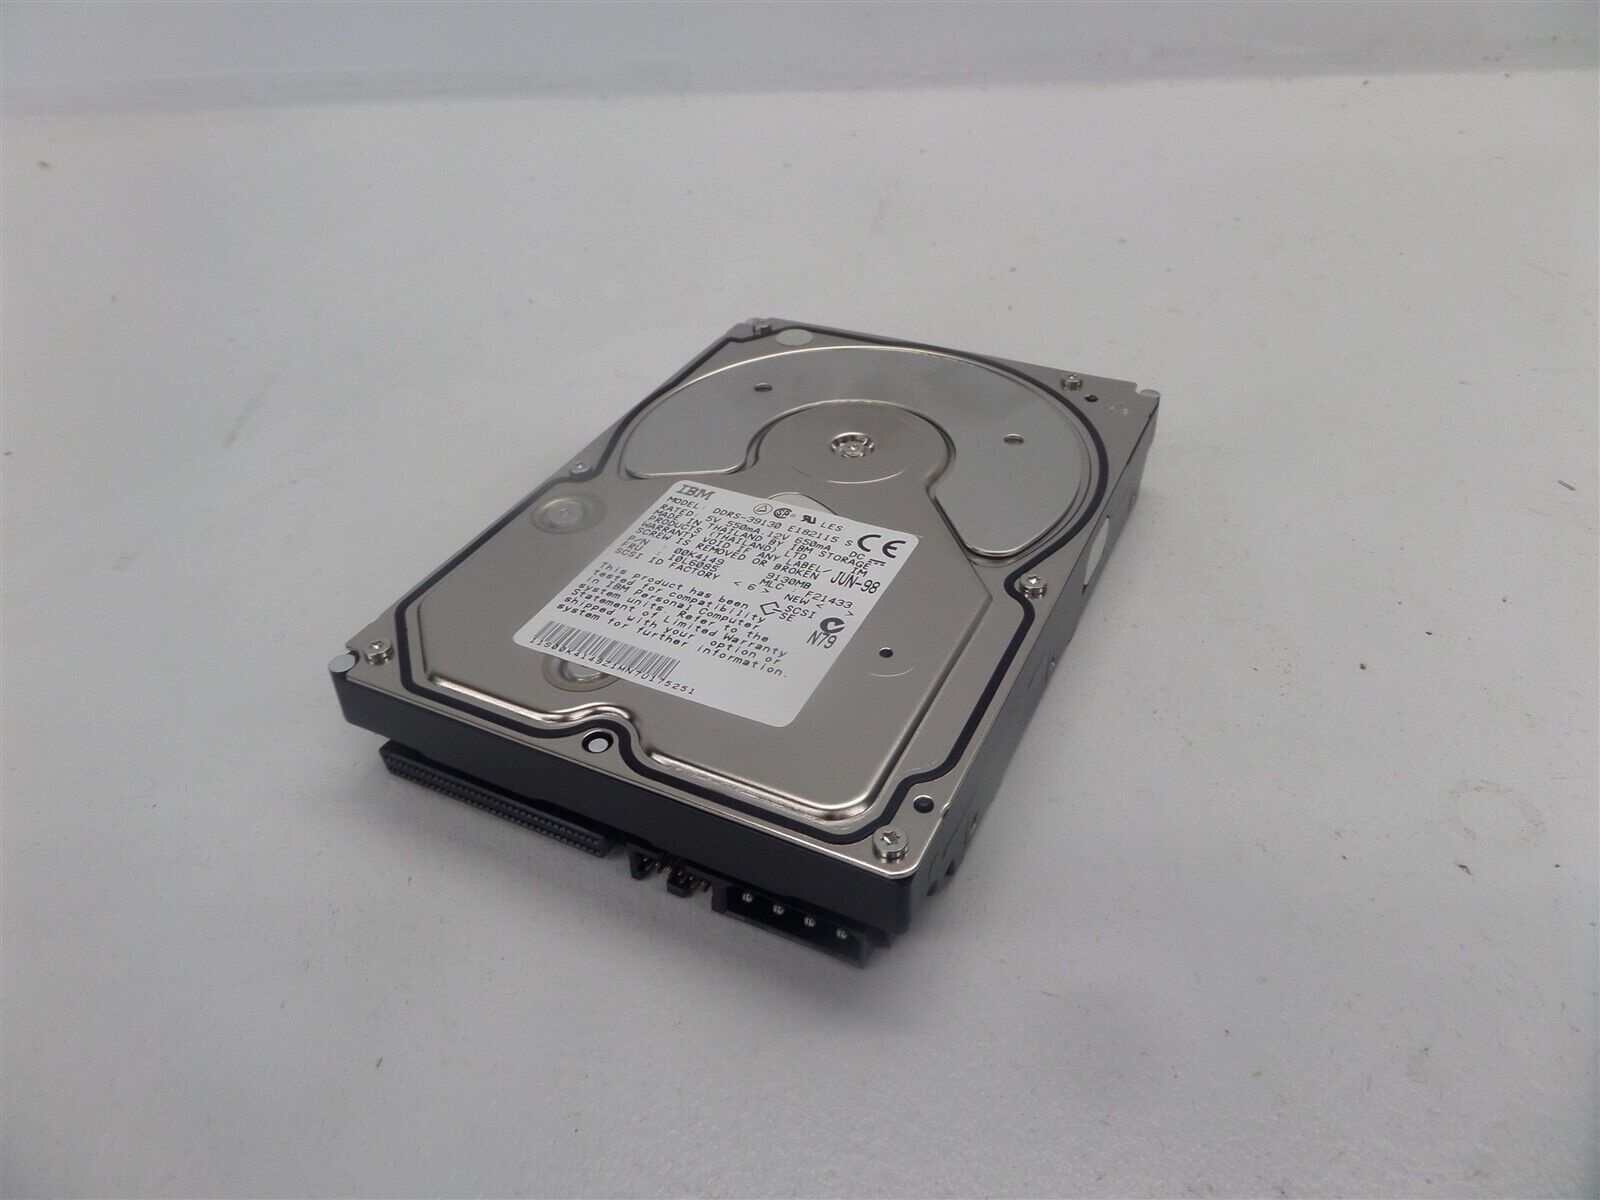 IBM DDRS-39130 9.1GB Ultrawide SCSI 7200RPM Hard Drive 00K4149